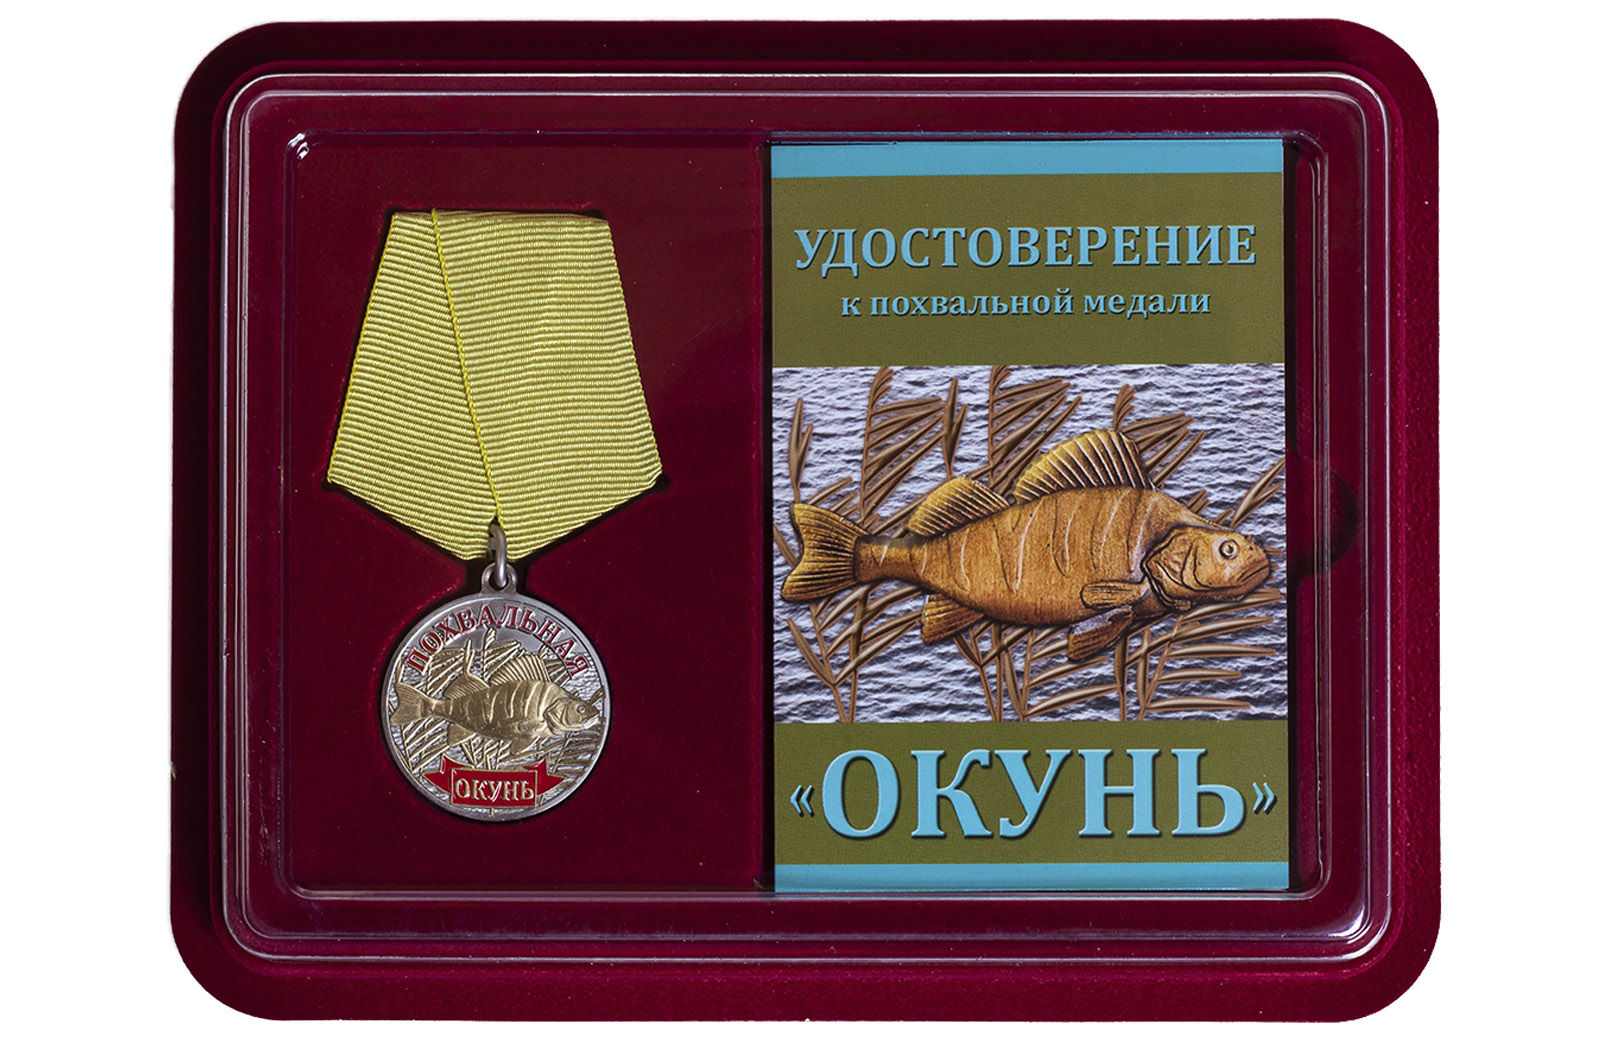 Купить медаль сувенирную Окунь в подарок рыбаку